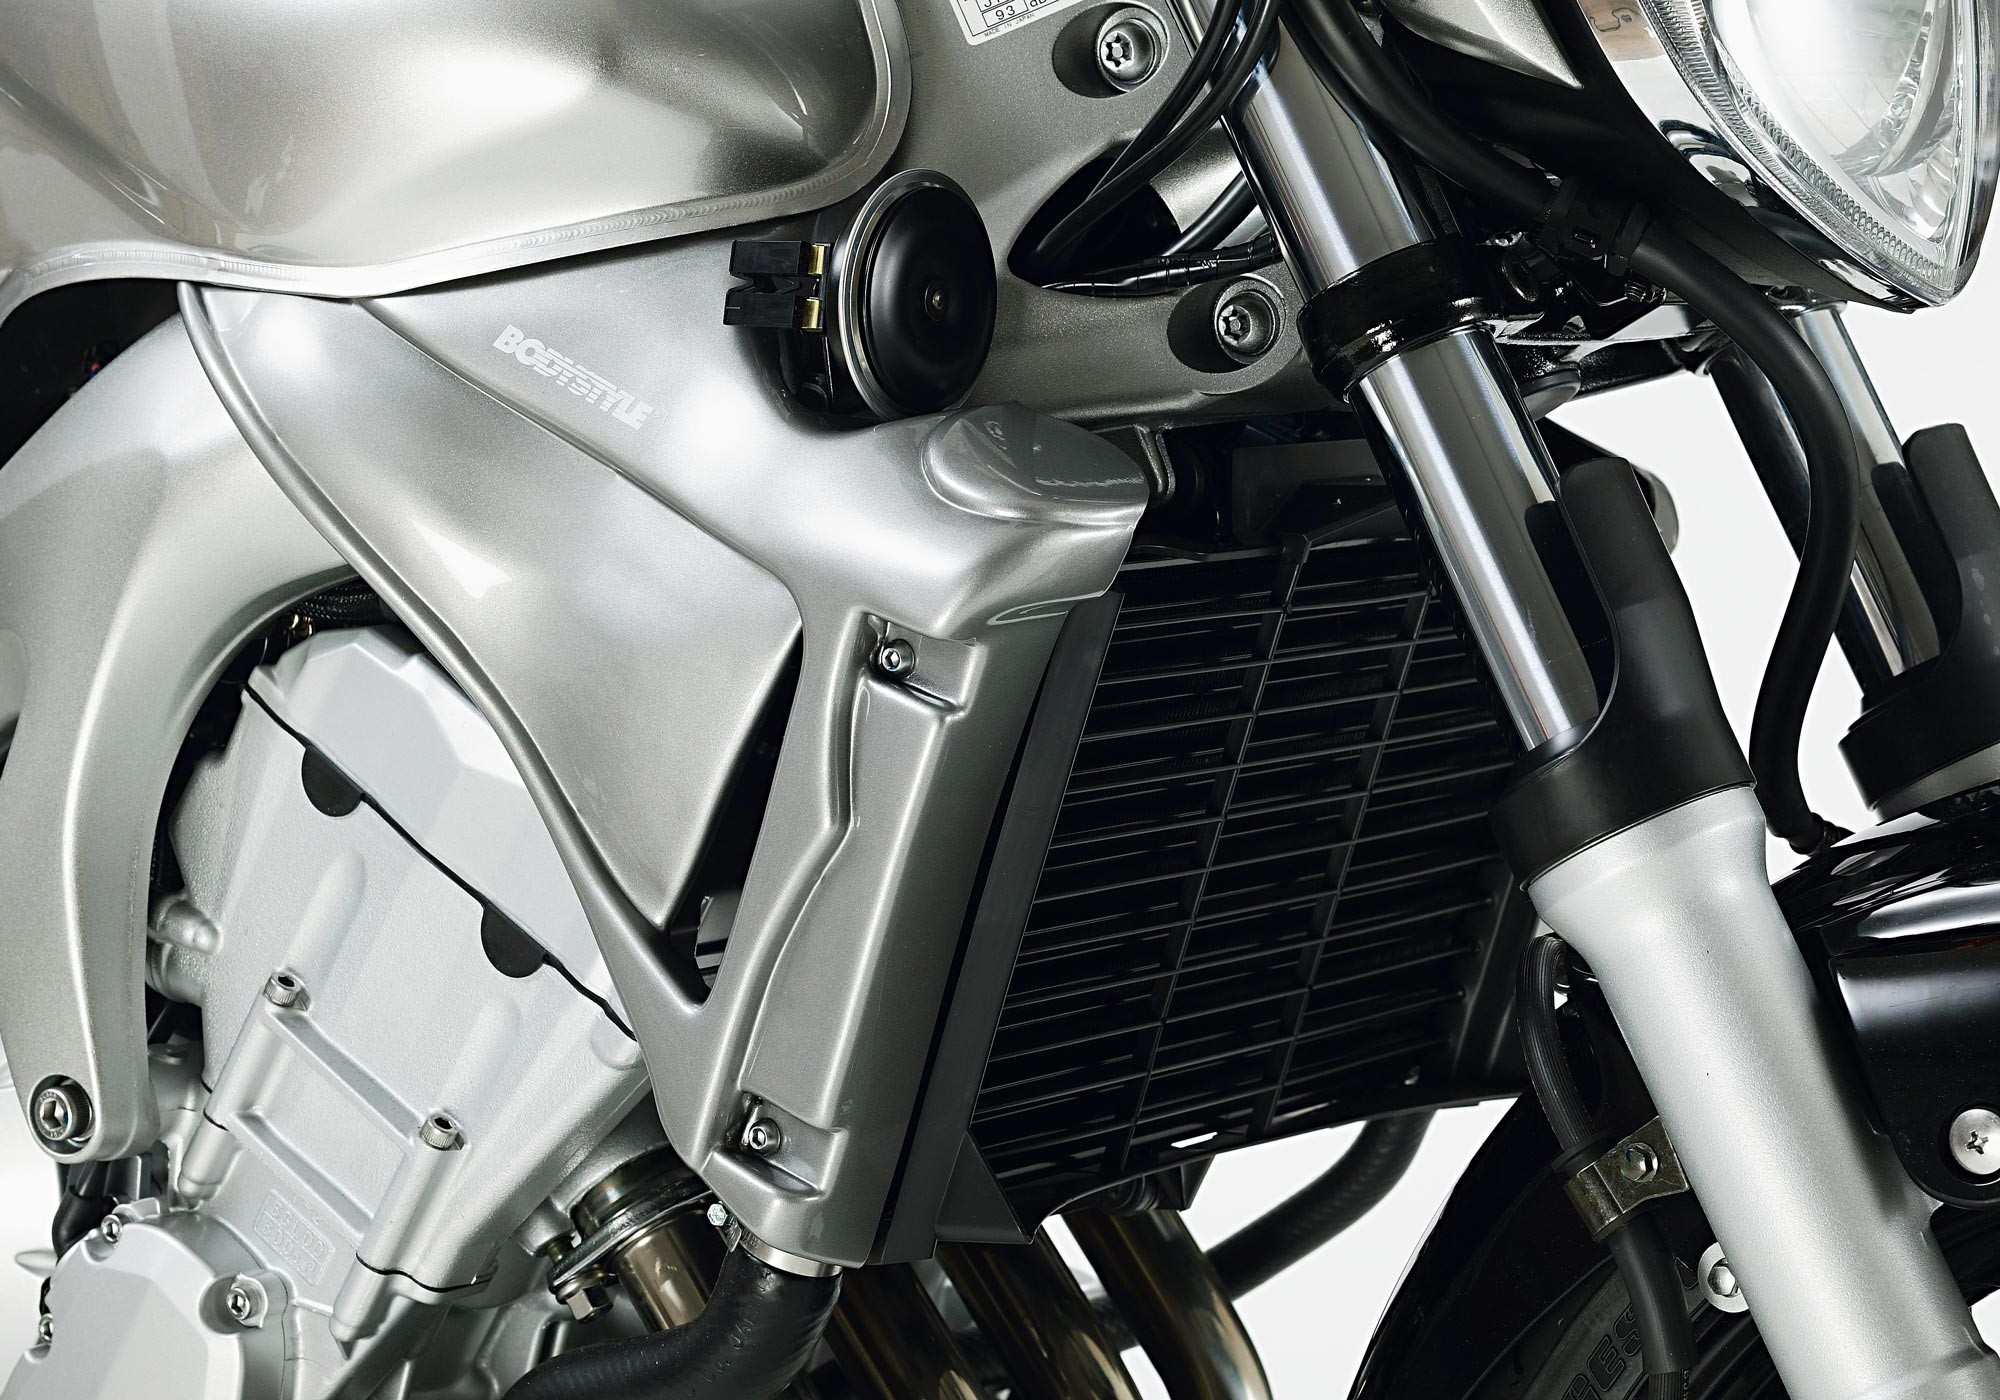 BODYSTYLE Sportsline Kühlerseitenverkleidung unlackiert passt für Yamaha FZ6, FZ6 S2